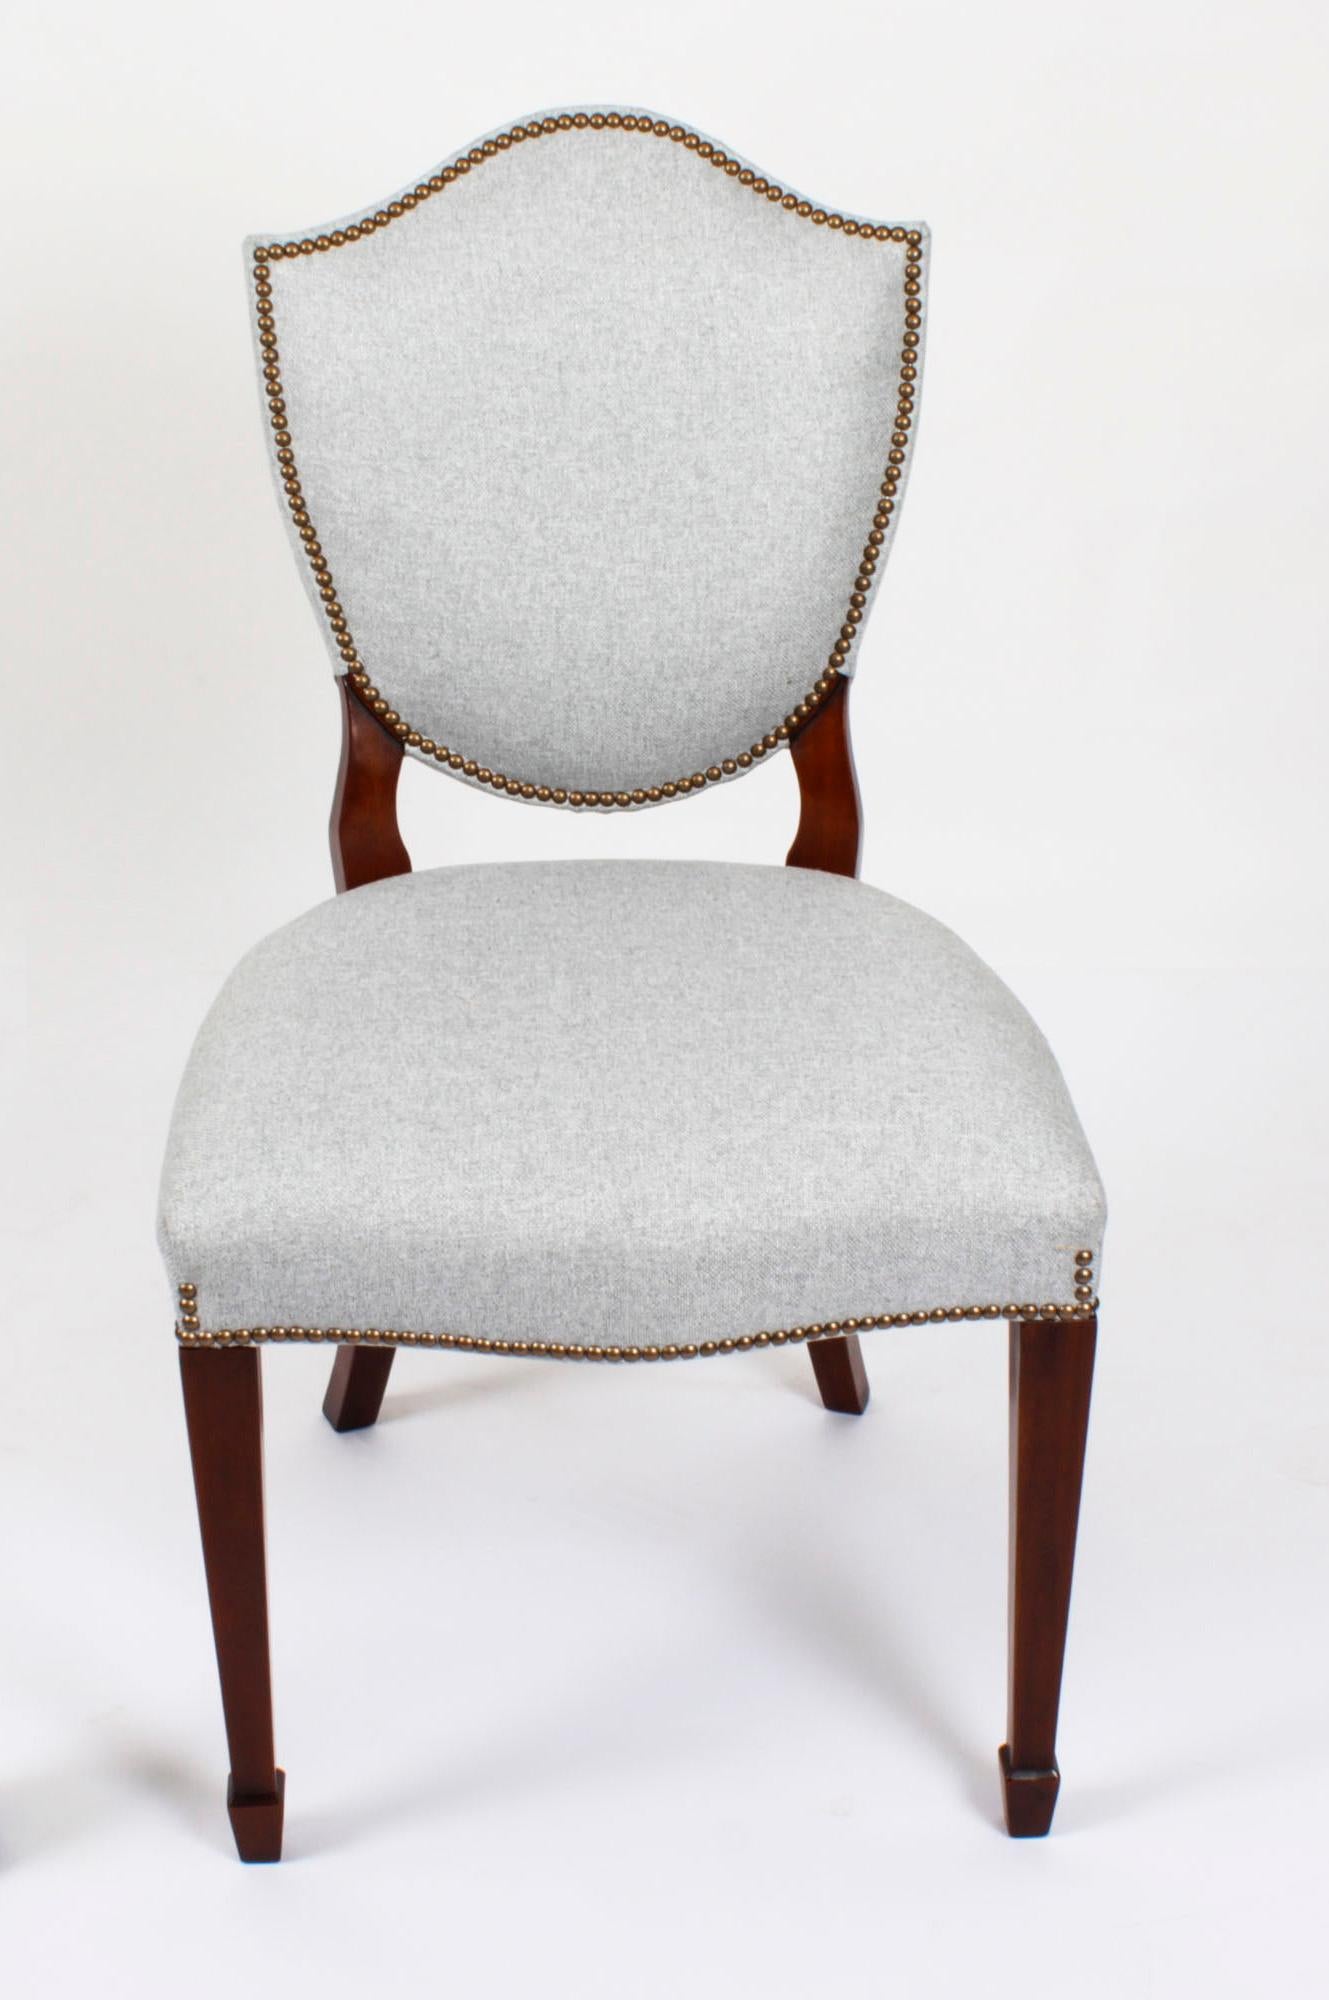 Ein hervorragender Vintage-Satz von zwölf Hepplewhite-Revival-Esszimmerstühlen mit gepolsterten Rückenlehnen, die aus der zweiten Hälfte des 20.

Das aus massivem Mahagoni handgefertigte Set besteht aus zehn Beistellstühlen und zwei Sesseln, die